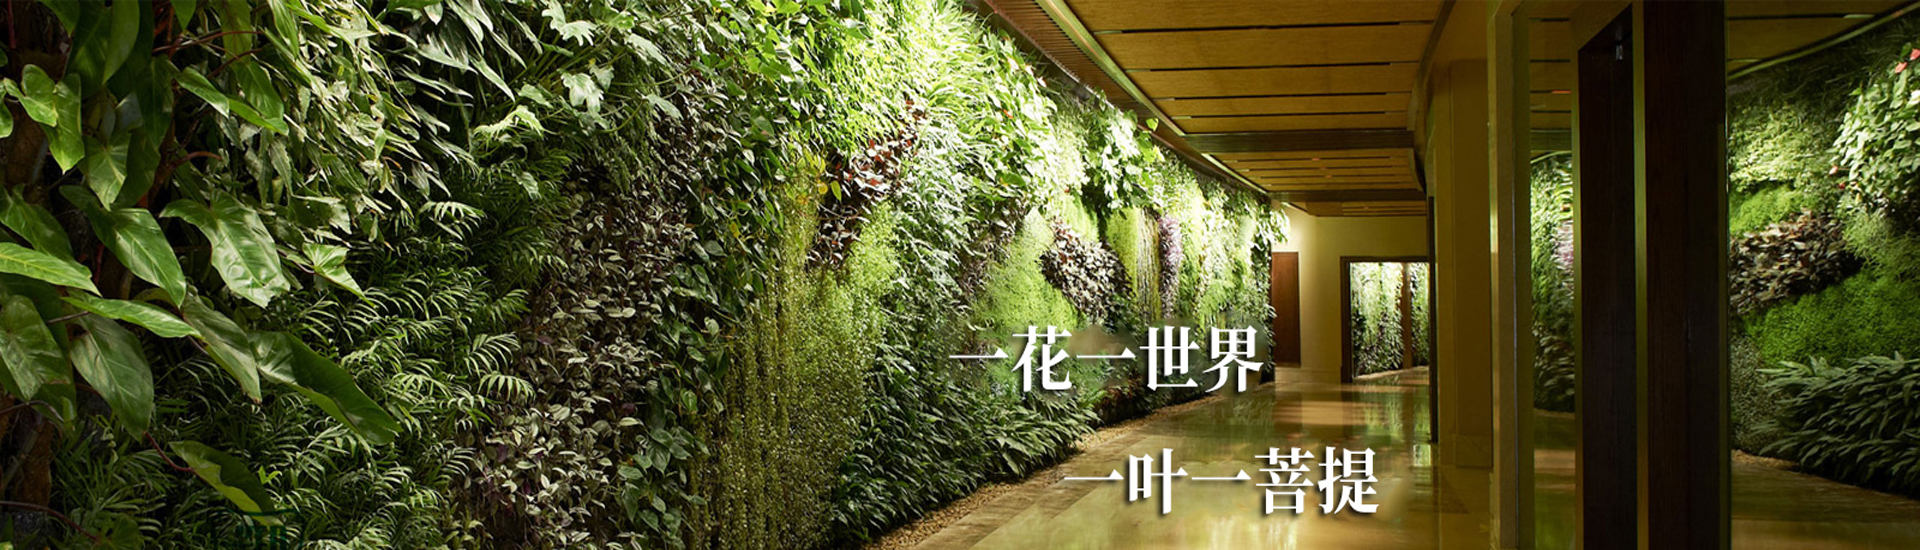 植物墙-绿植墙